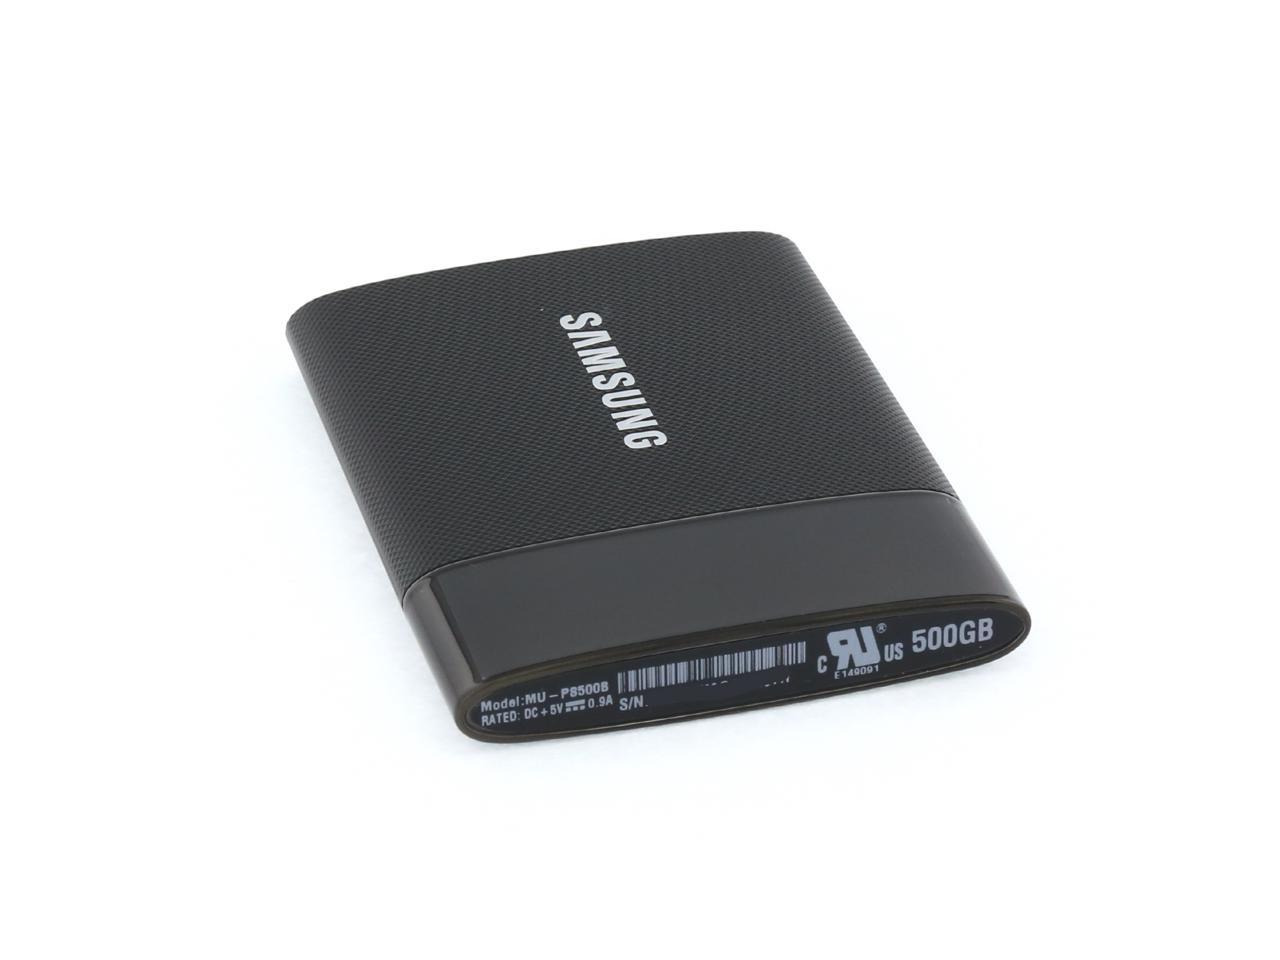 Samsung T1 Portable 500GB USB 3.0 External SSD DISCONTINUED MU-PS500B/AM 